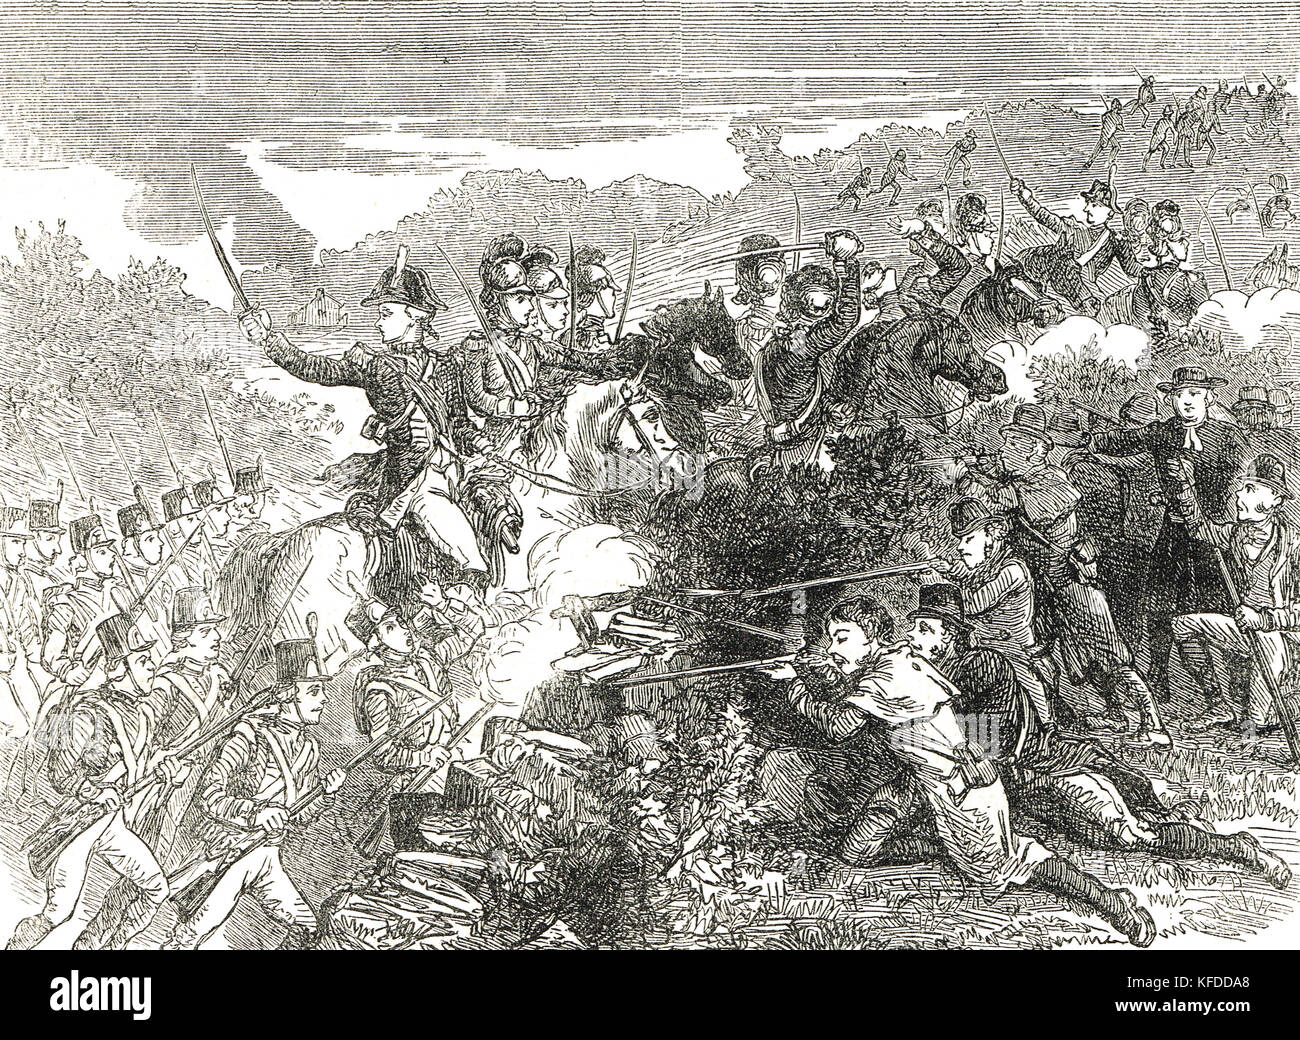 Attaque de l'armée britannique sur les rebelles de Wexford, 1798, rébellion irlandaise de 1798 Banque D'Images